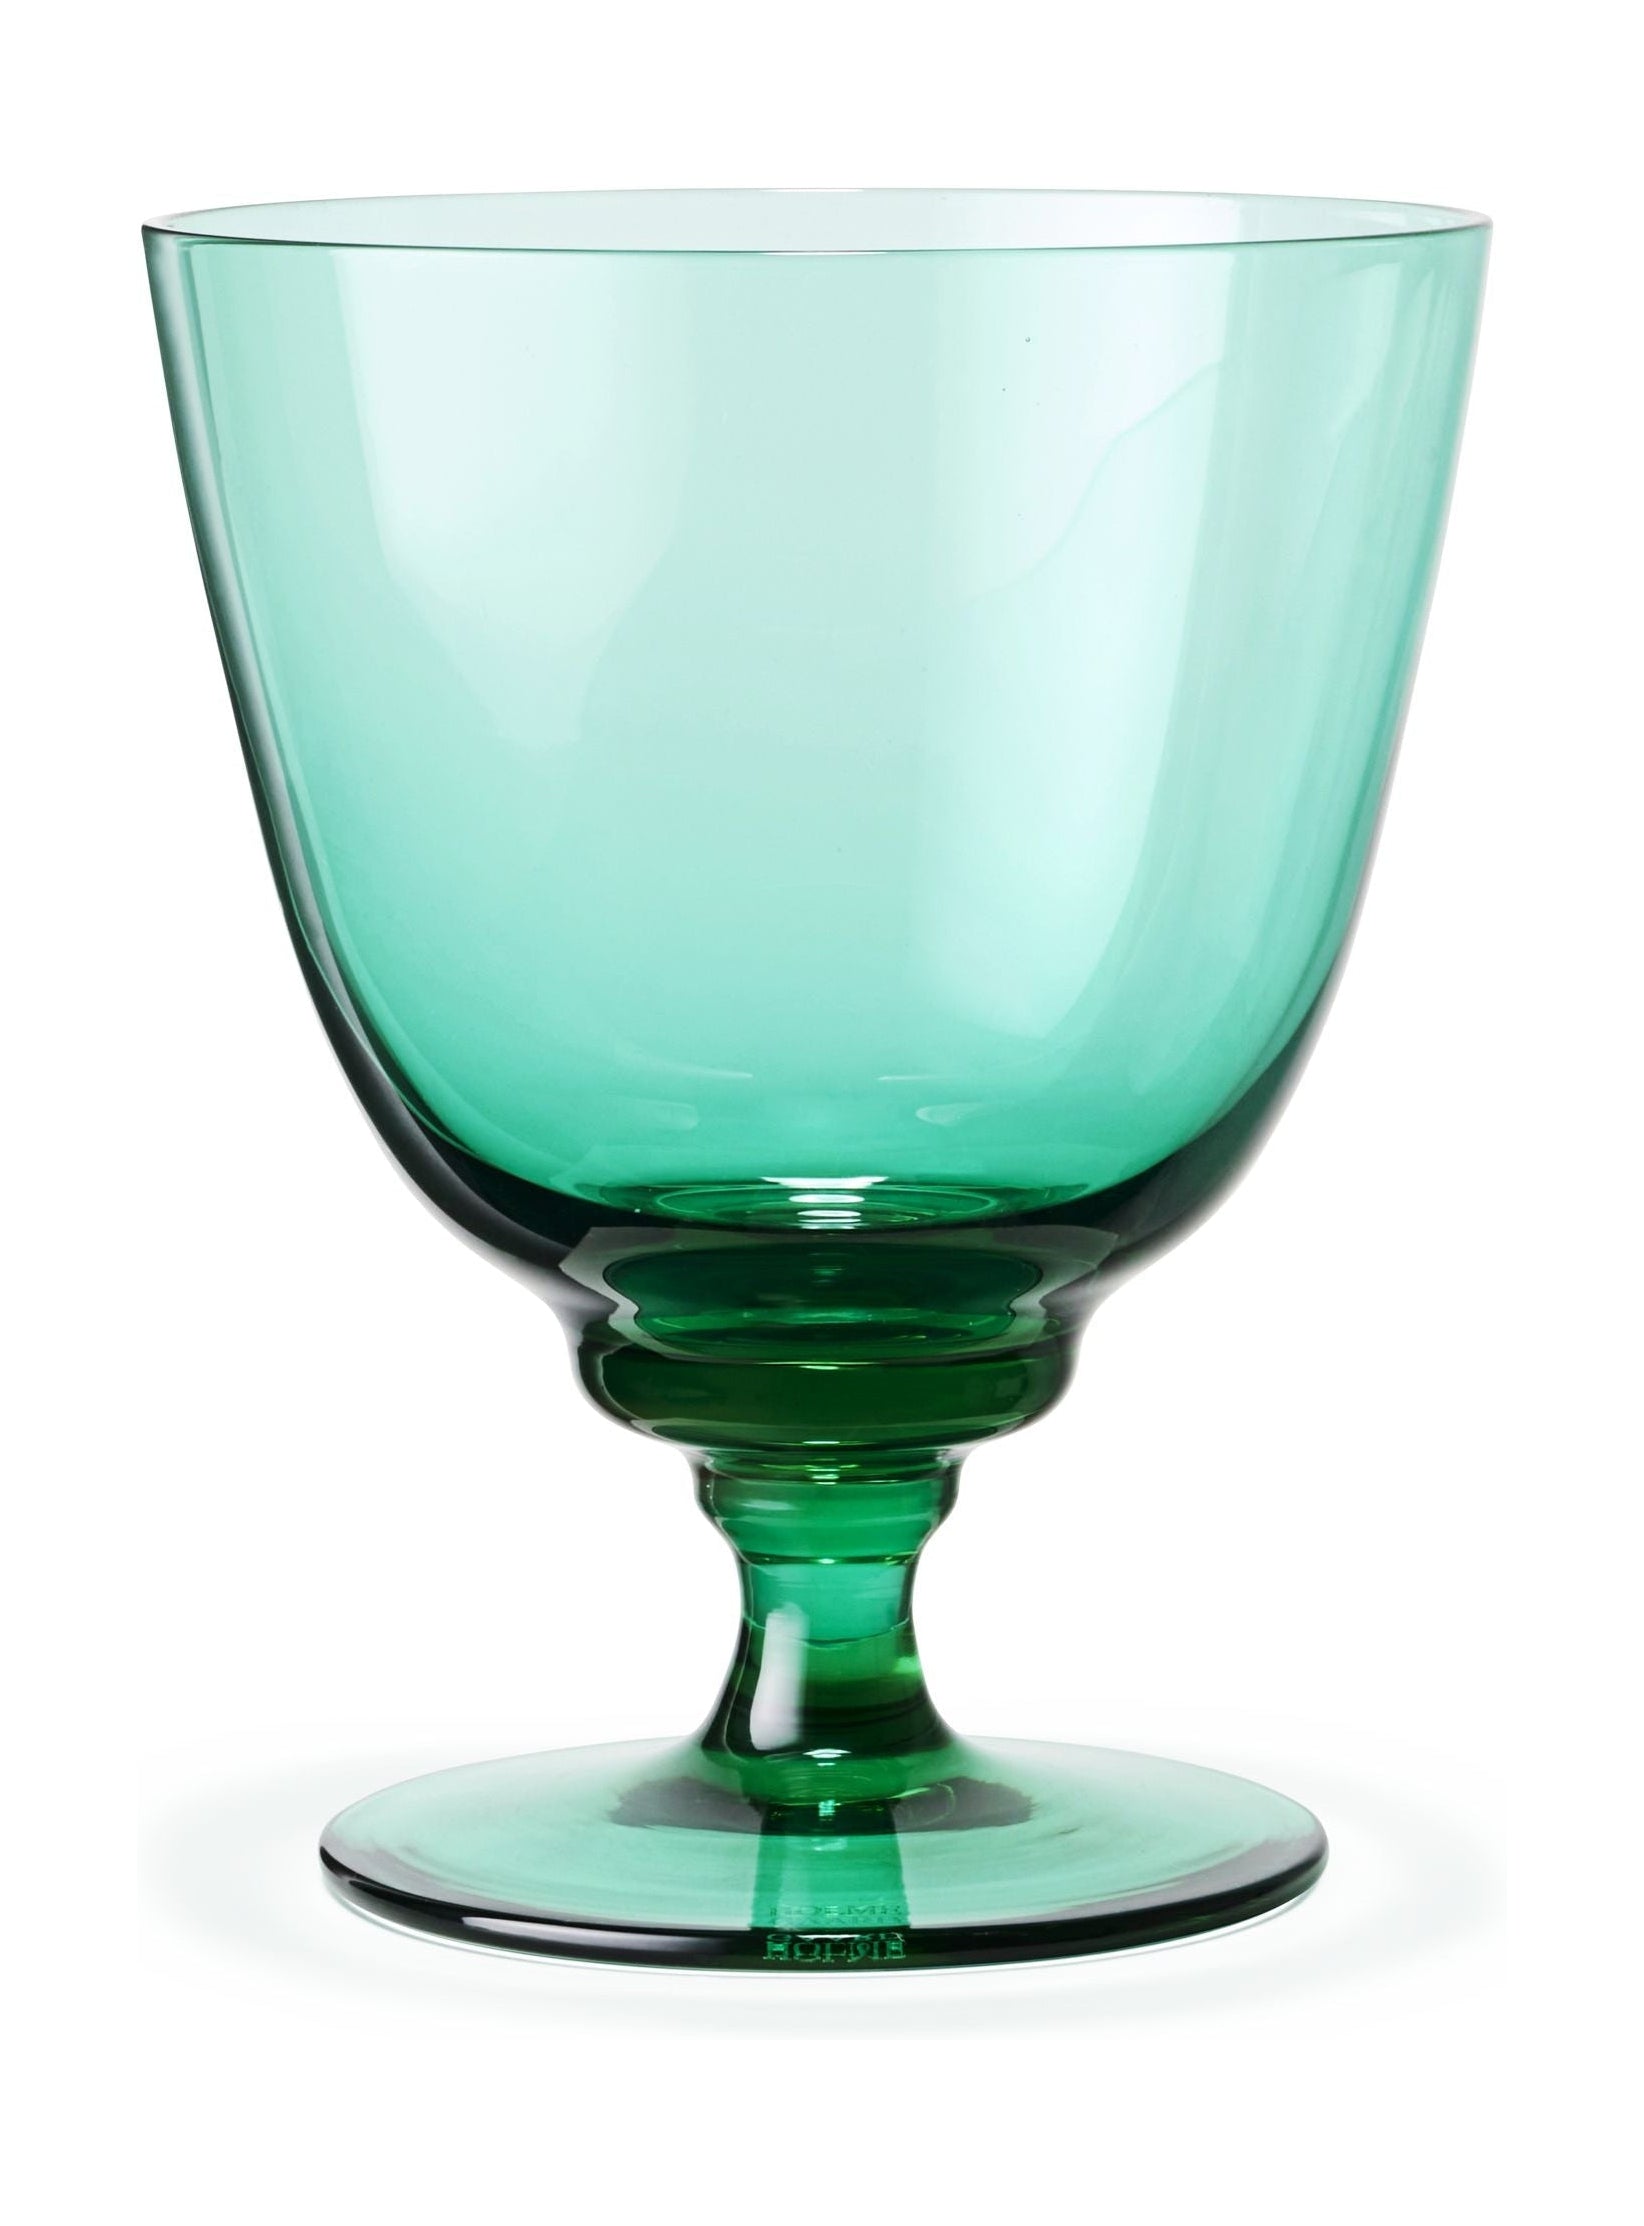 Holmegaard Flow Glass en el pie 35 CL, esmeralda verde